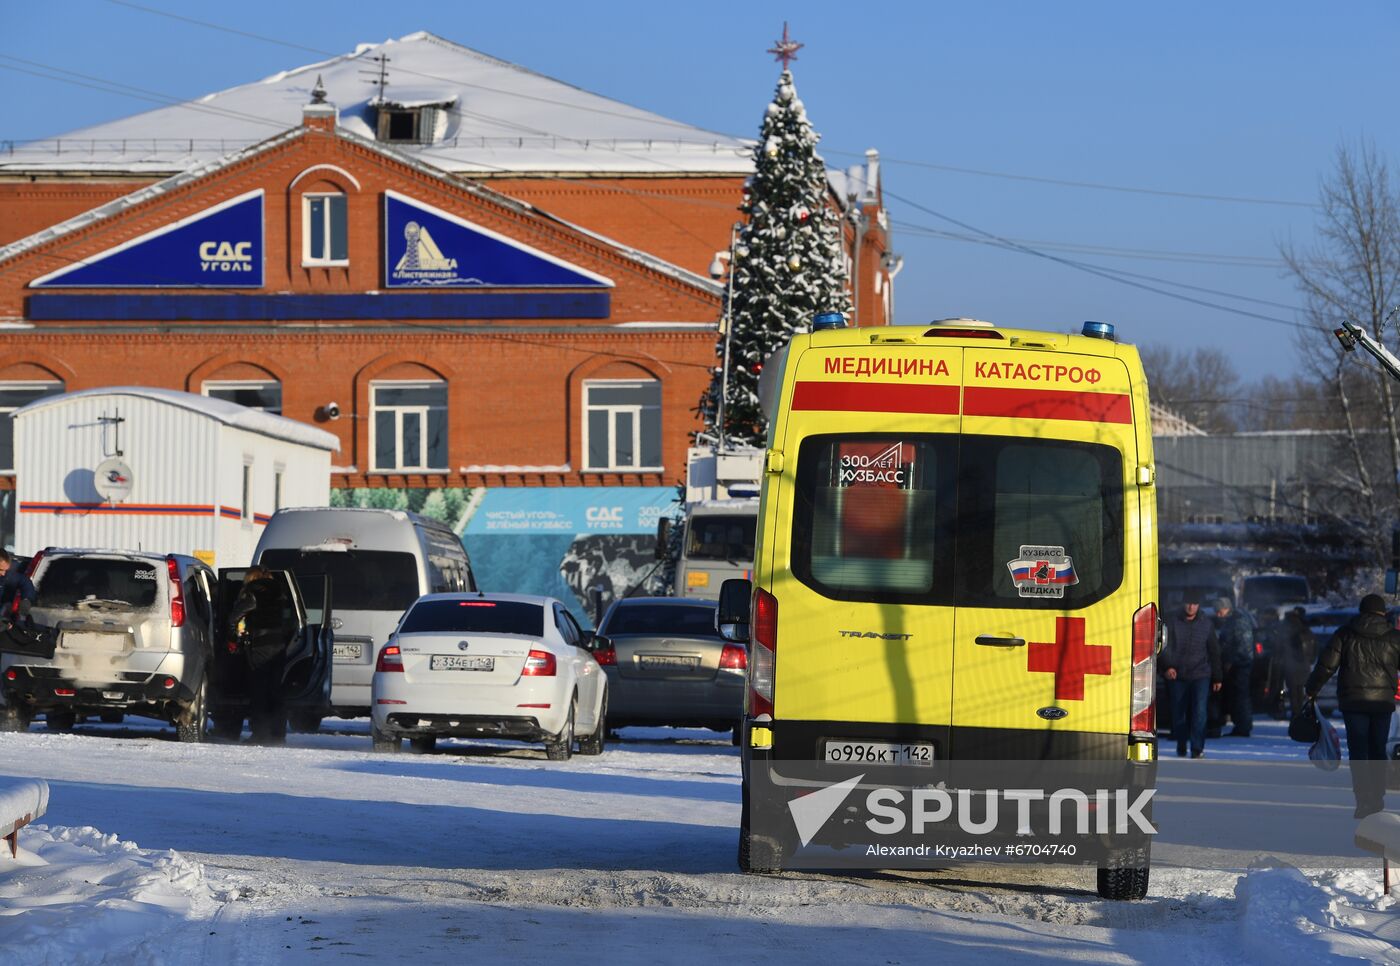 Russia Coal Mine Accident Rescue Operation